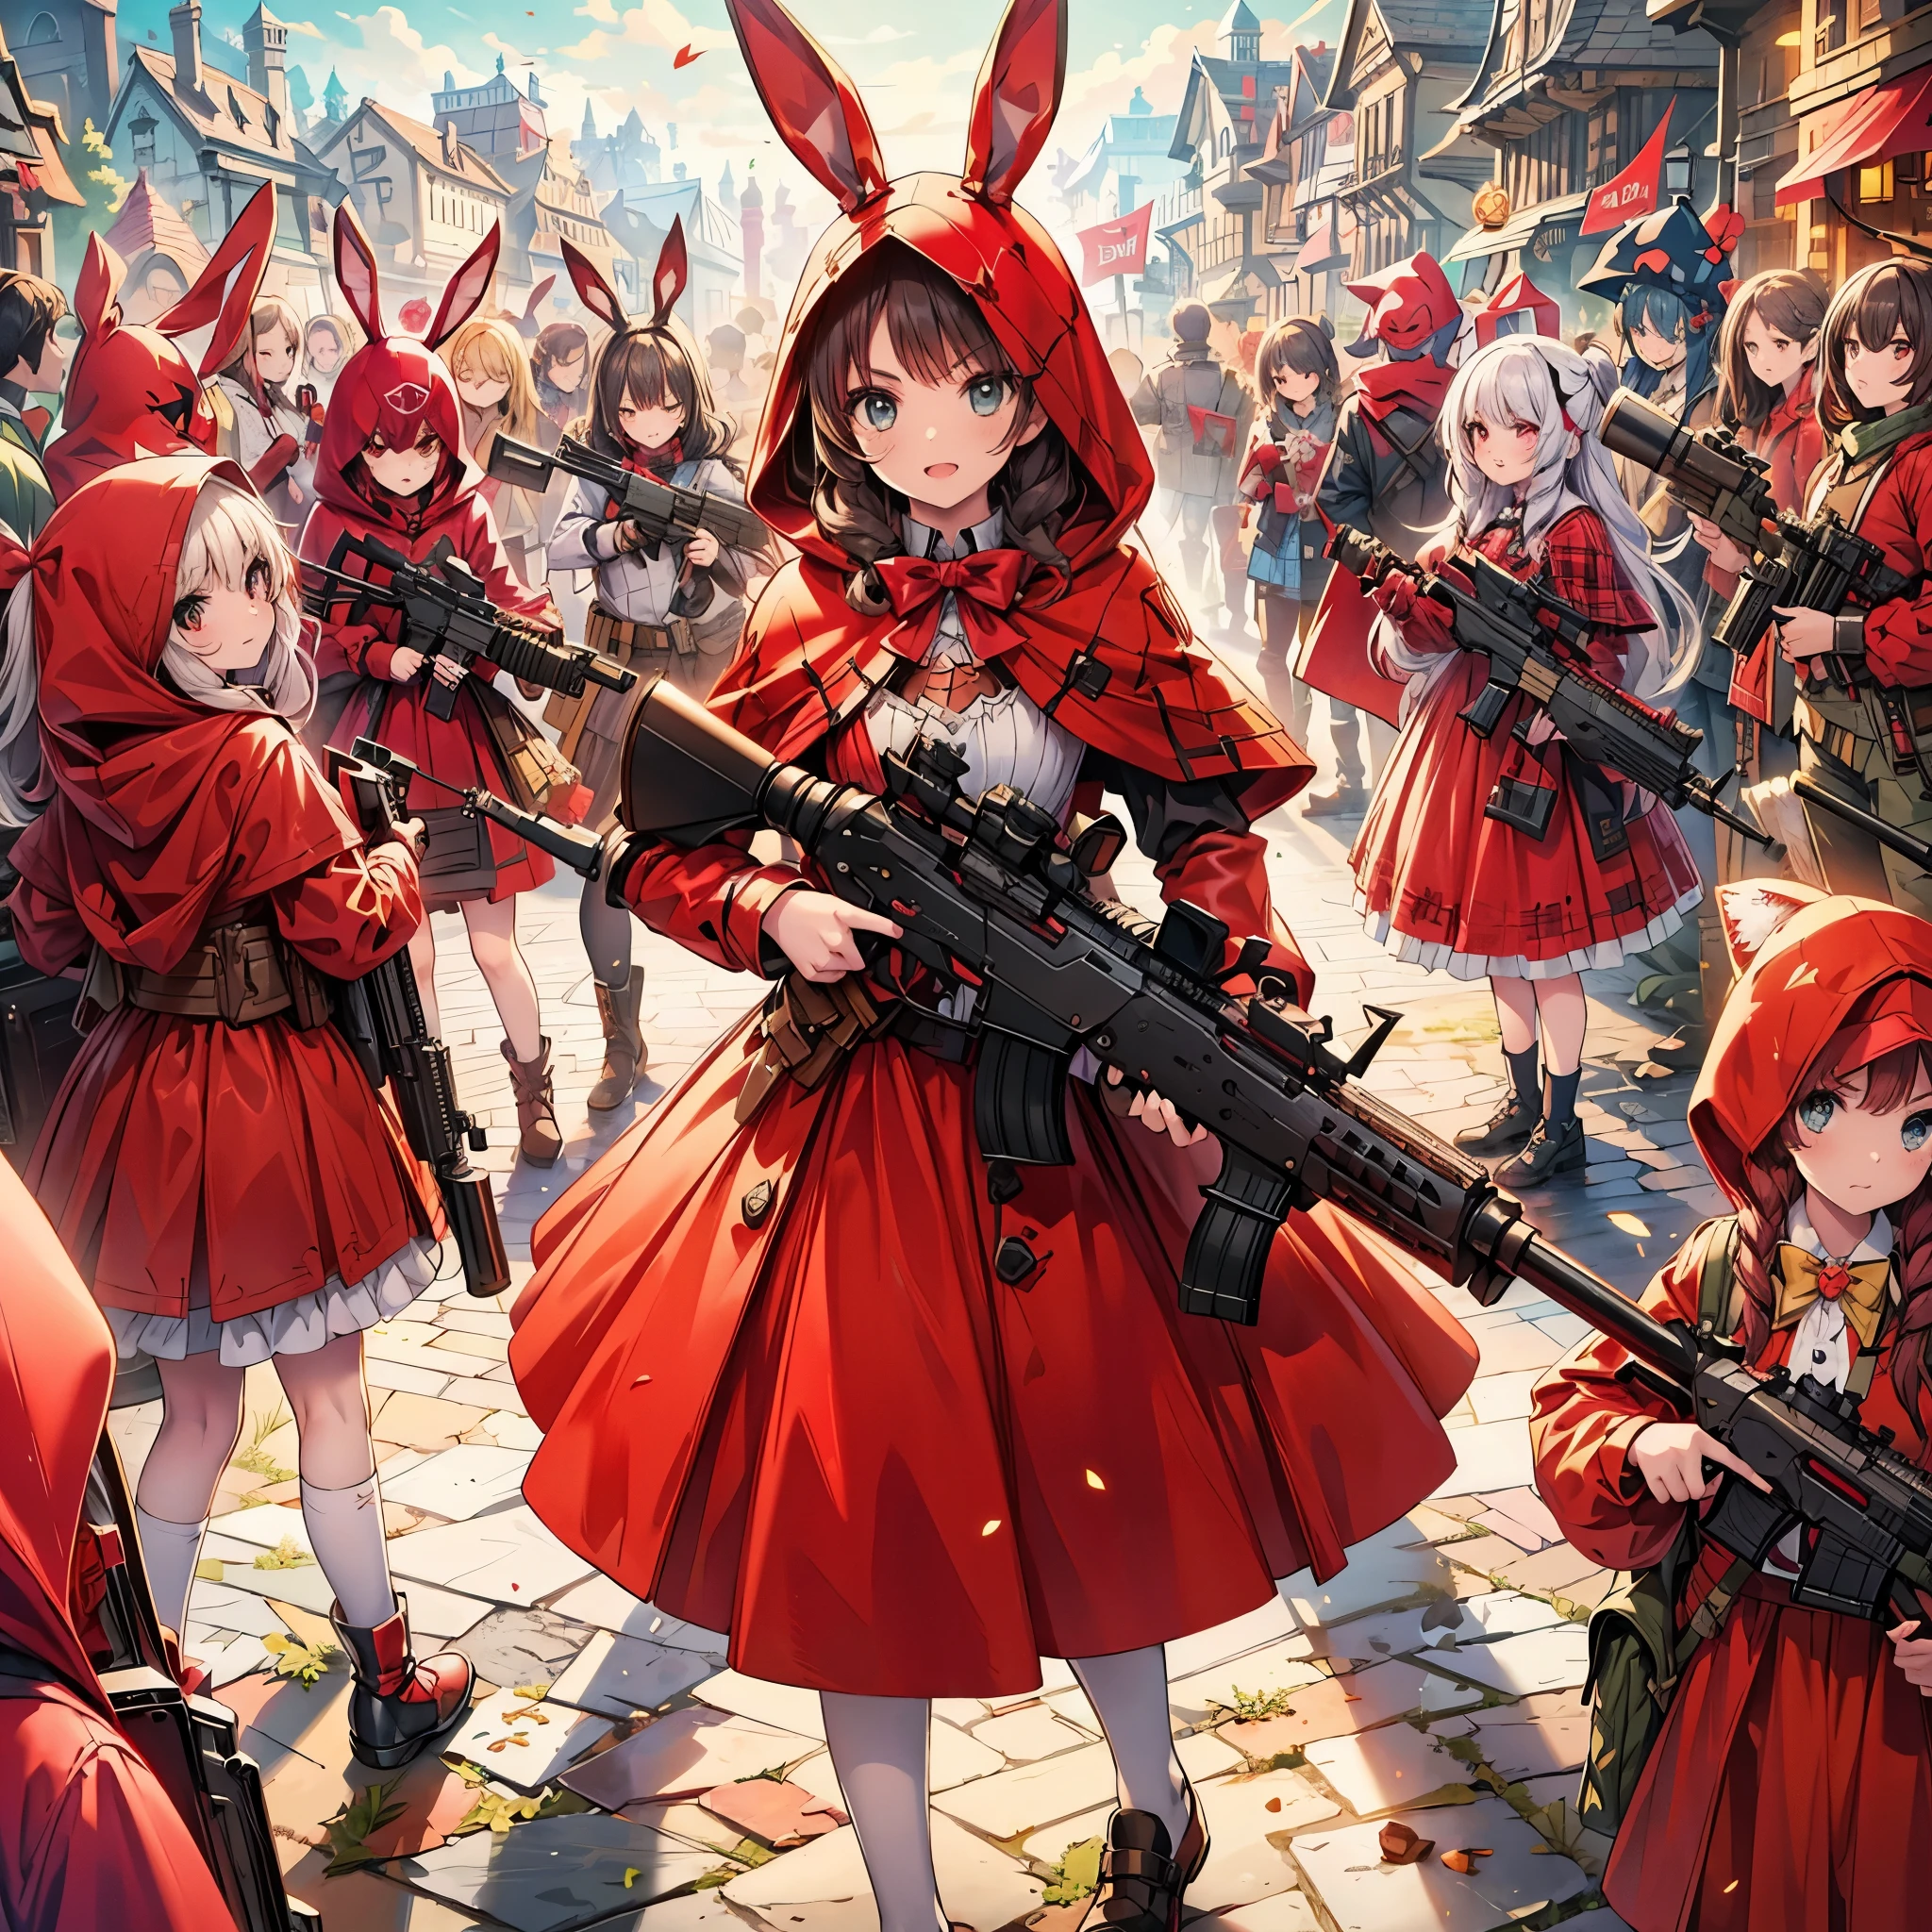 (ผลงานชิ้นเอก), คุณภาพดีที่สุด, ศิลปะแฟนตาซี, many little girls in สีแดง เครื่องดูดควัน and dress holding weapon at wonderland, (((everyone wearing สีแดง เครื่องดูดควัน))), หูกระต่าย, เข็มขัดกระสุน, ปืน, machine ปืน, gatling ปืน, hand ปืน,อาวุธ, (สีแดง_เครื่องดูดควัน:1.5)